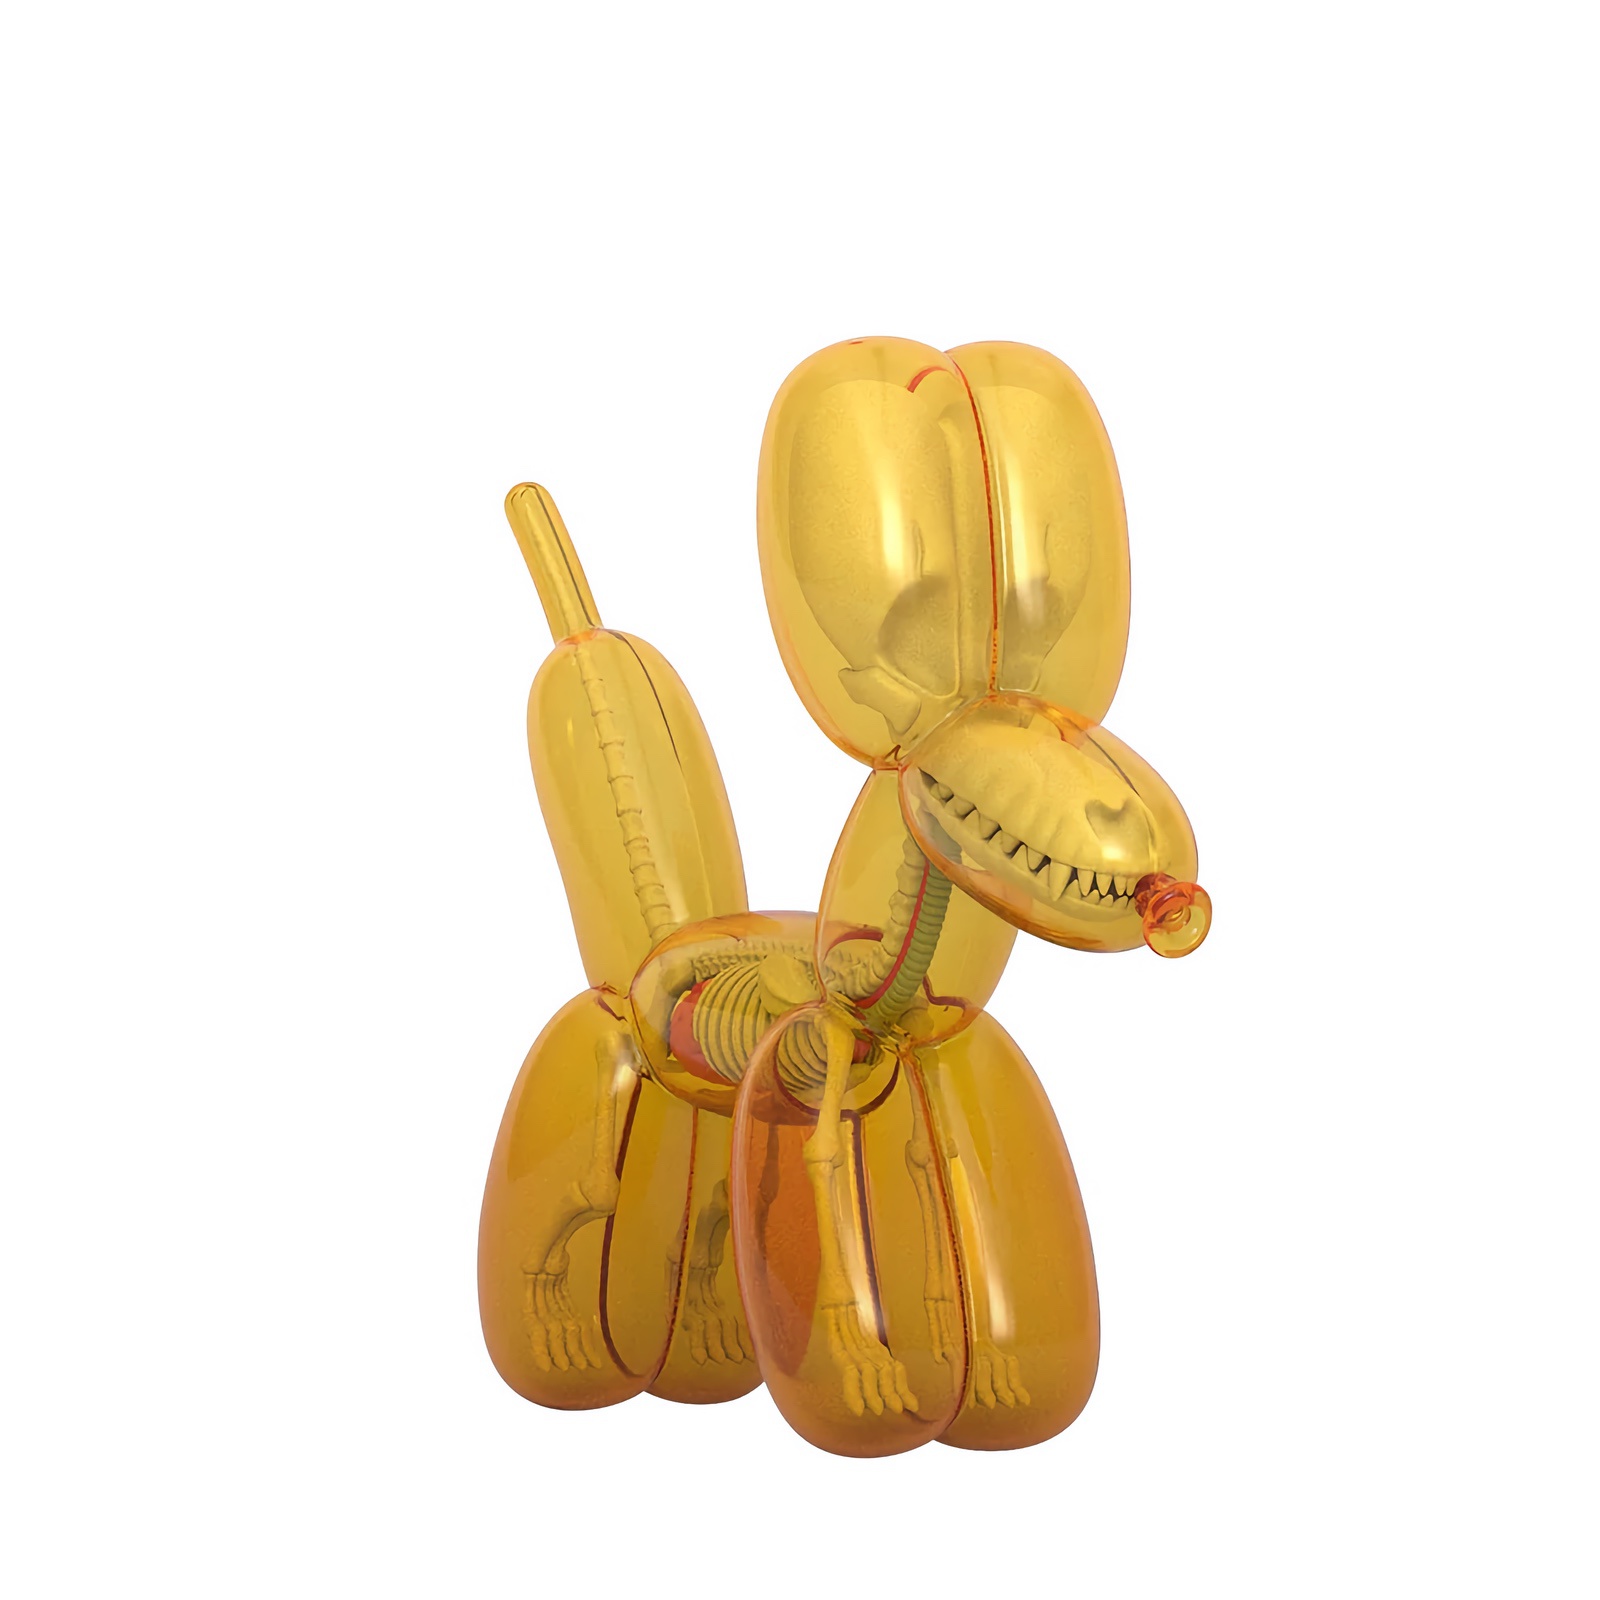 Funny Anatomy Balloon Dog - Honey Ed. by Jason Freeny x Mighty